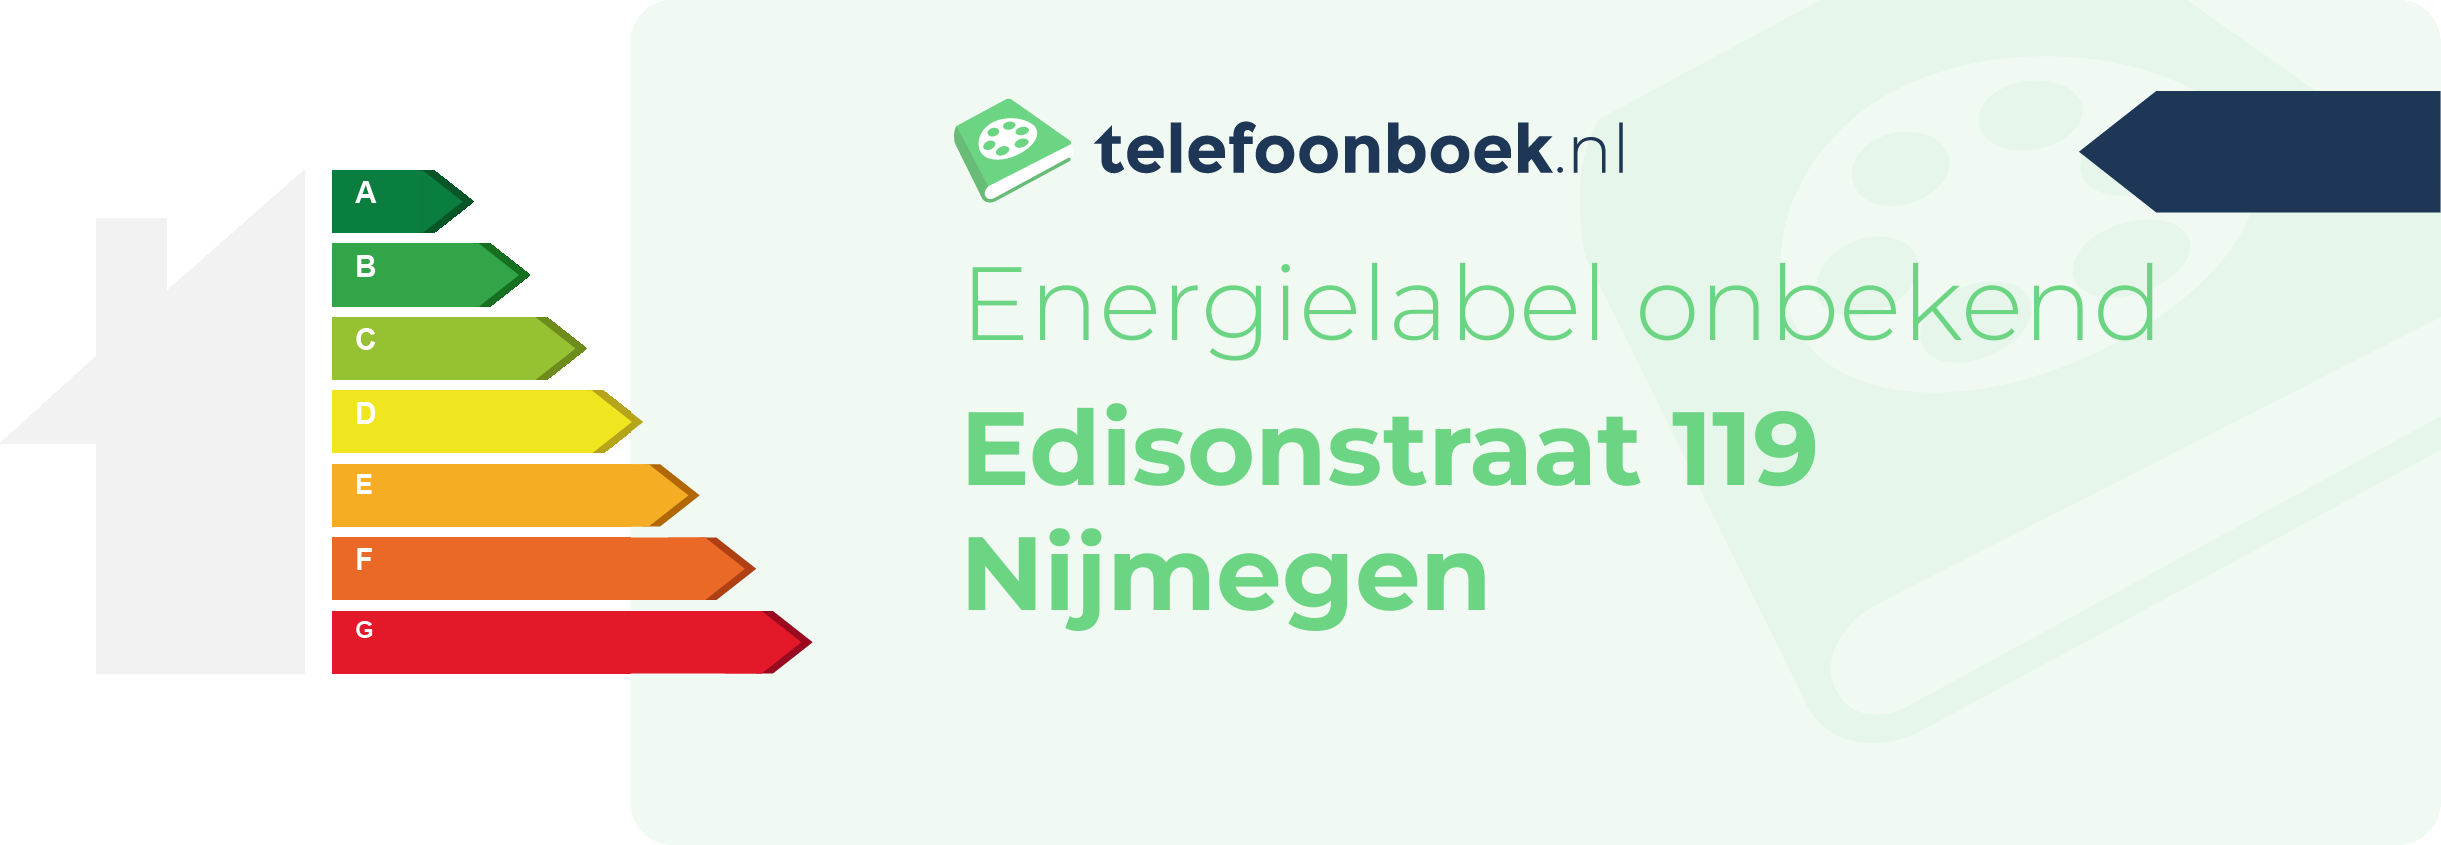 Energielabel Edisonstraat 119 Nijmegen